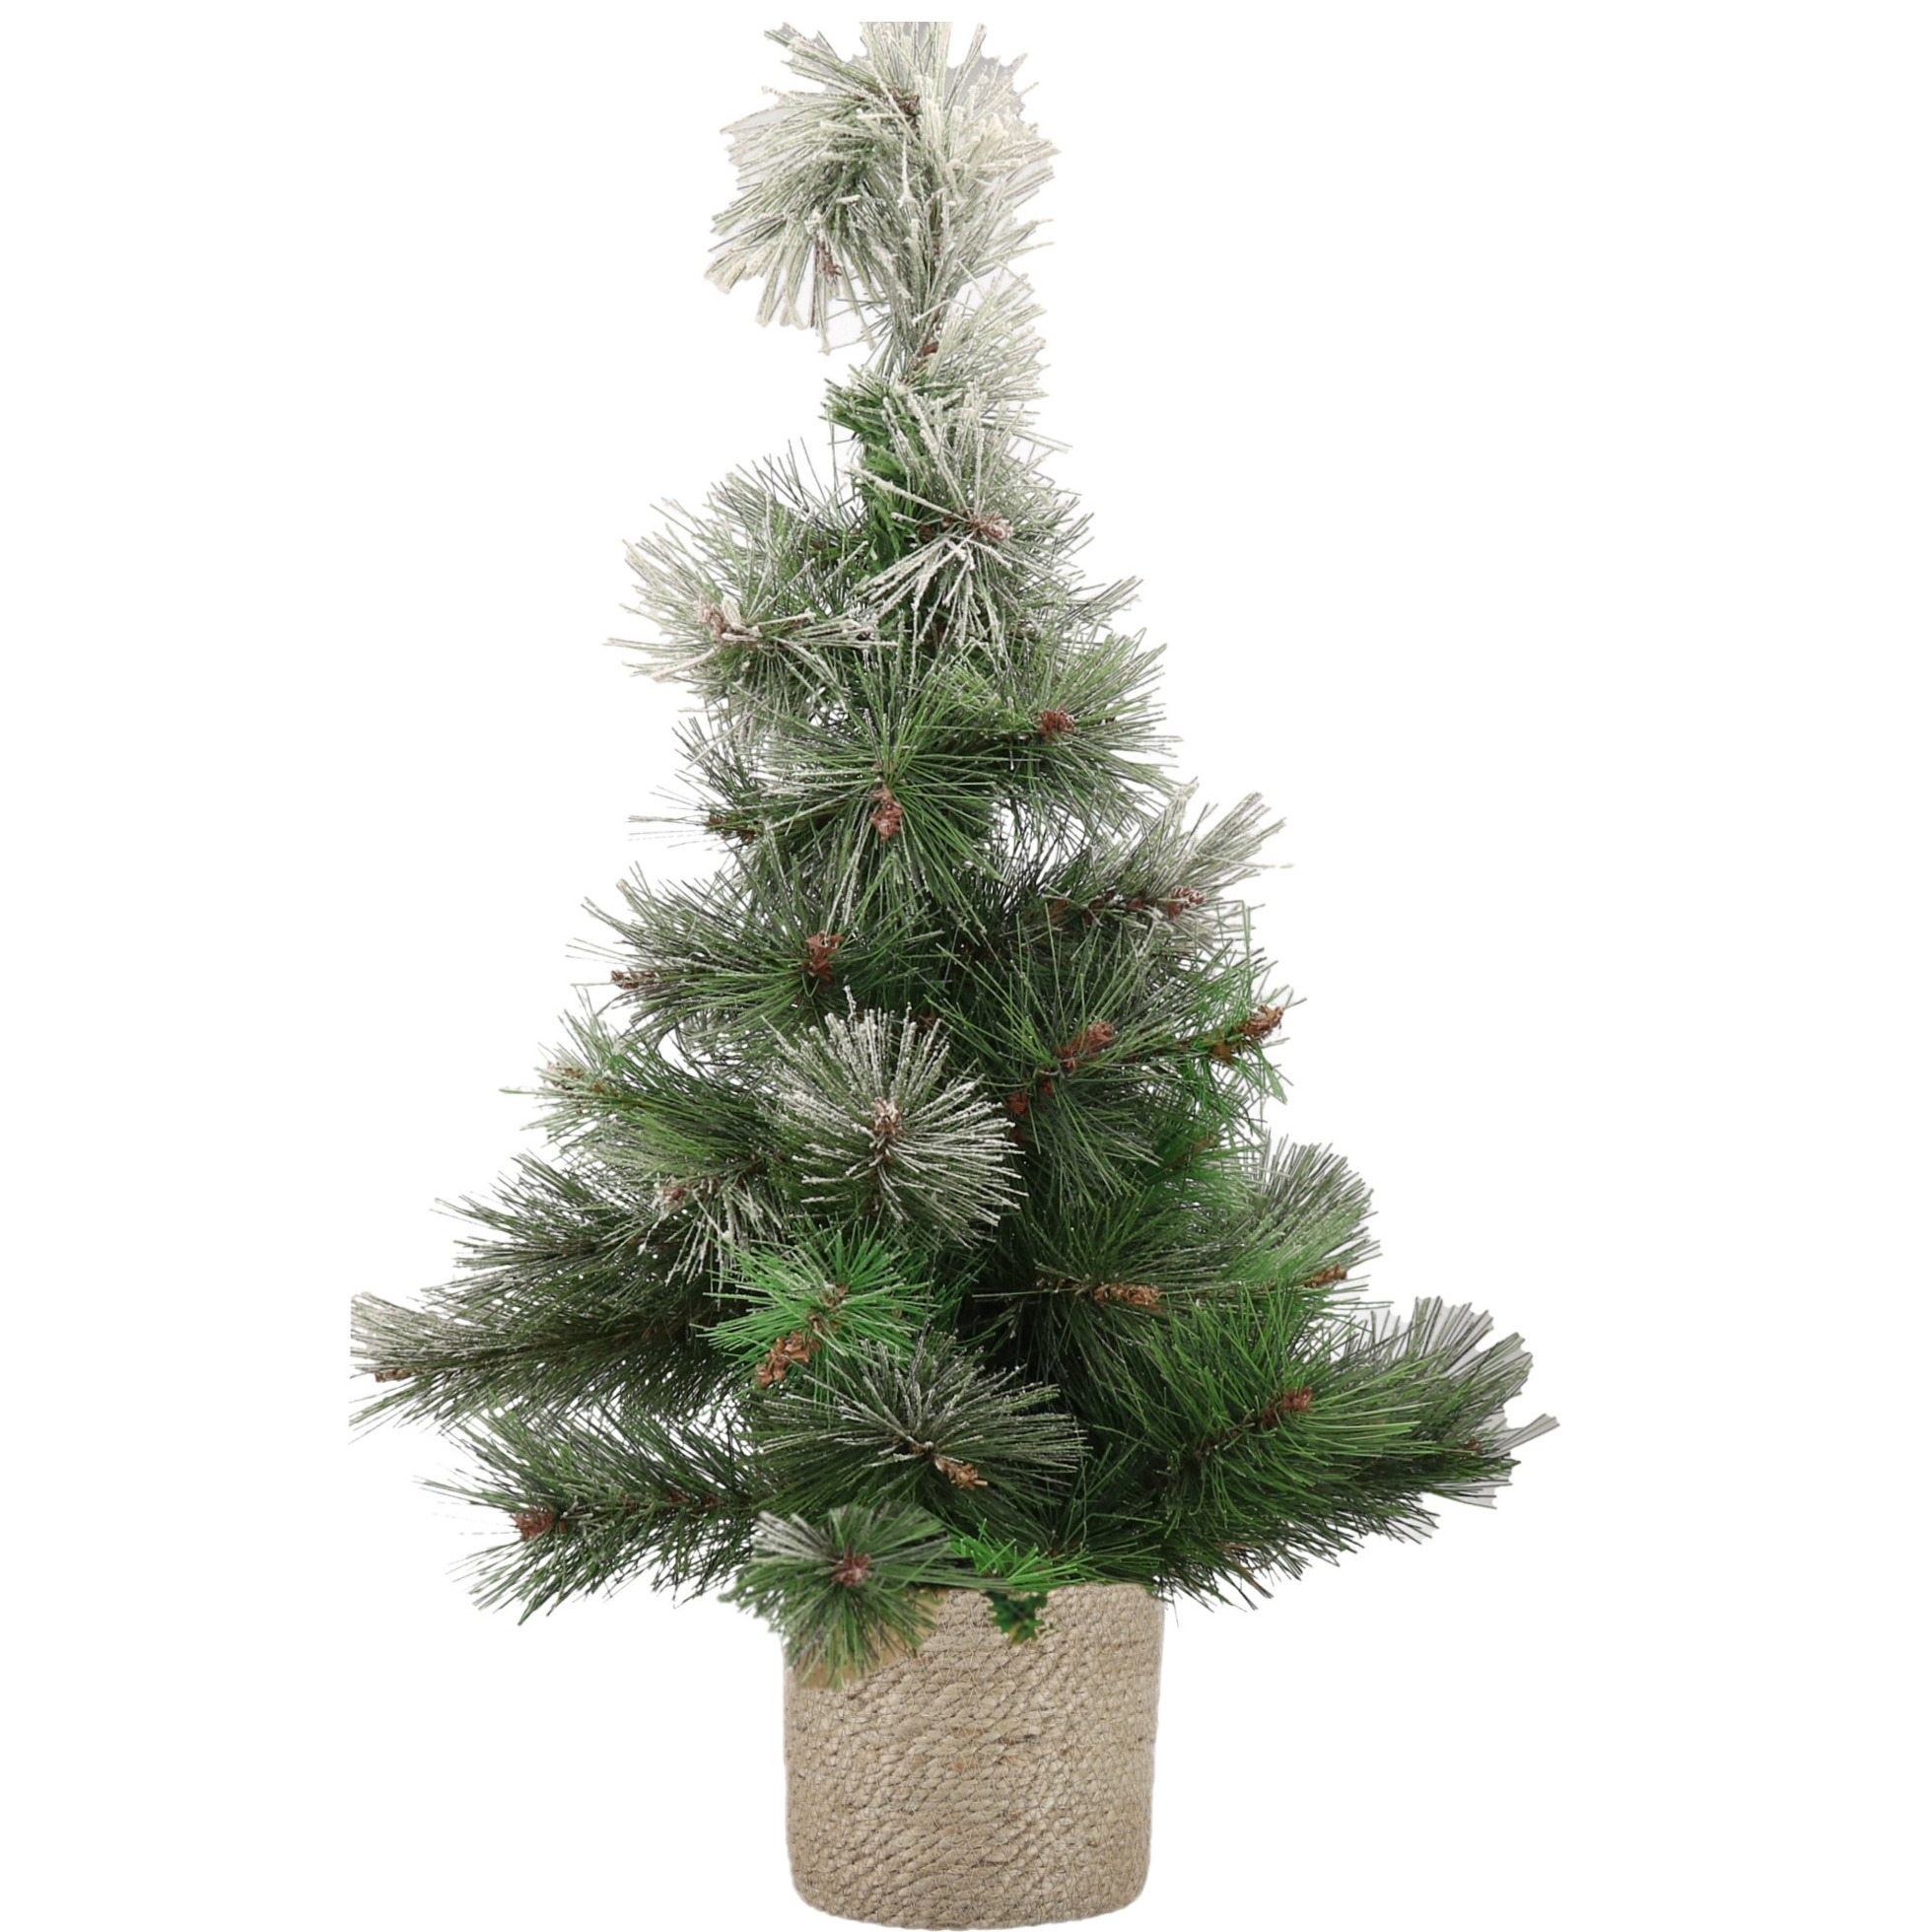 Besneeuwde kunstboom-kunst kerstboom 60 cm met naturel jute pot